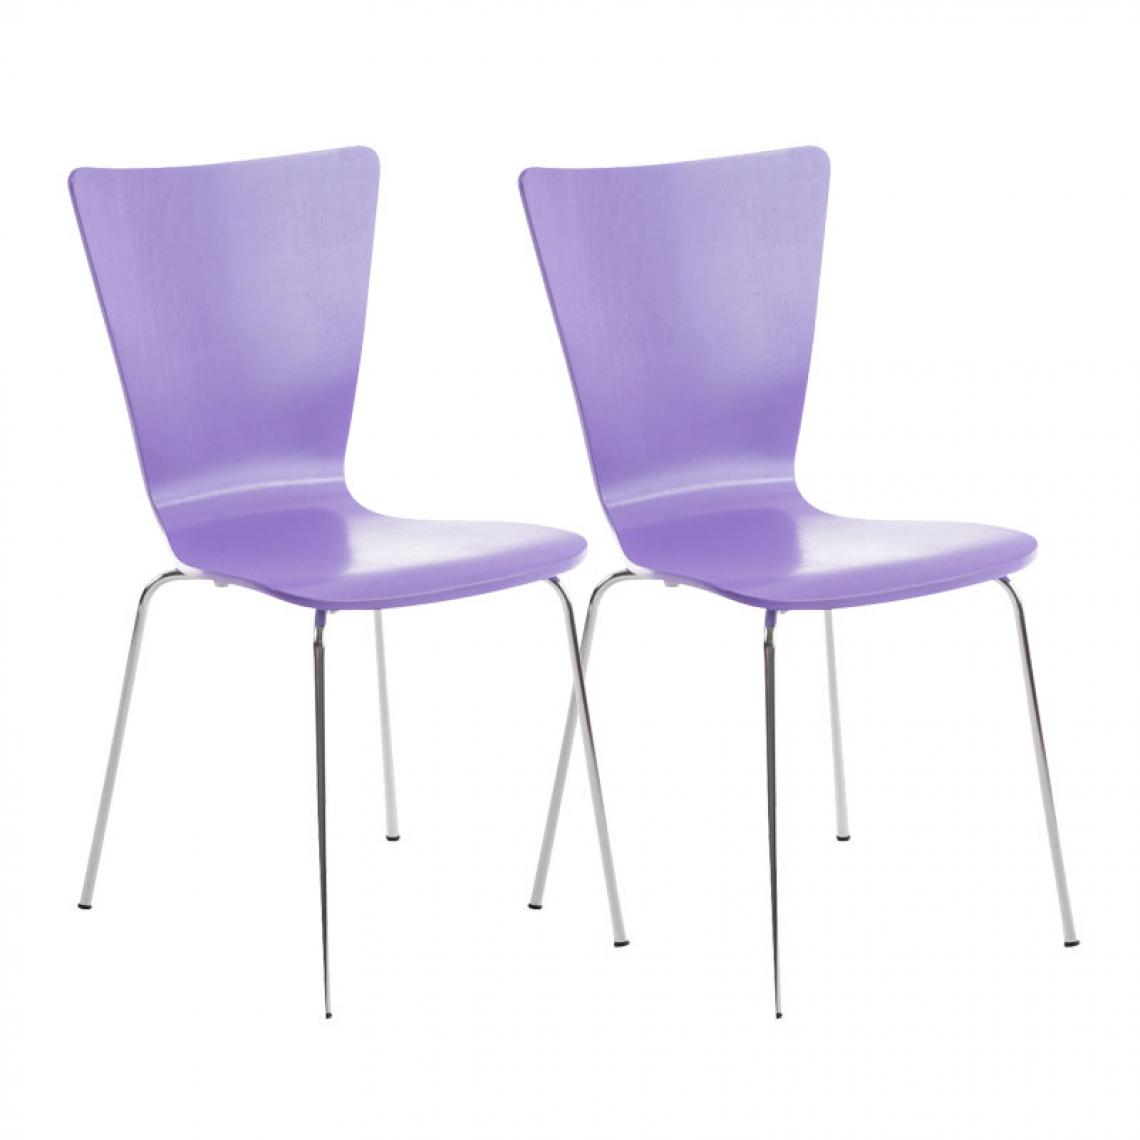 Icaverne - Contemporain Lot de 2 chaises visiteurs edition Jakarta couleur violet - Chaises